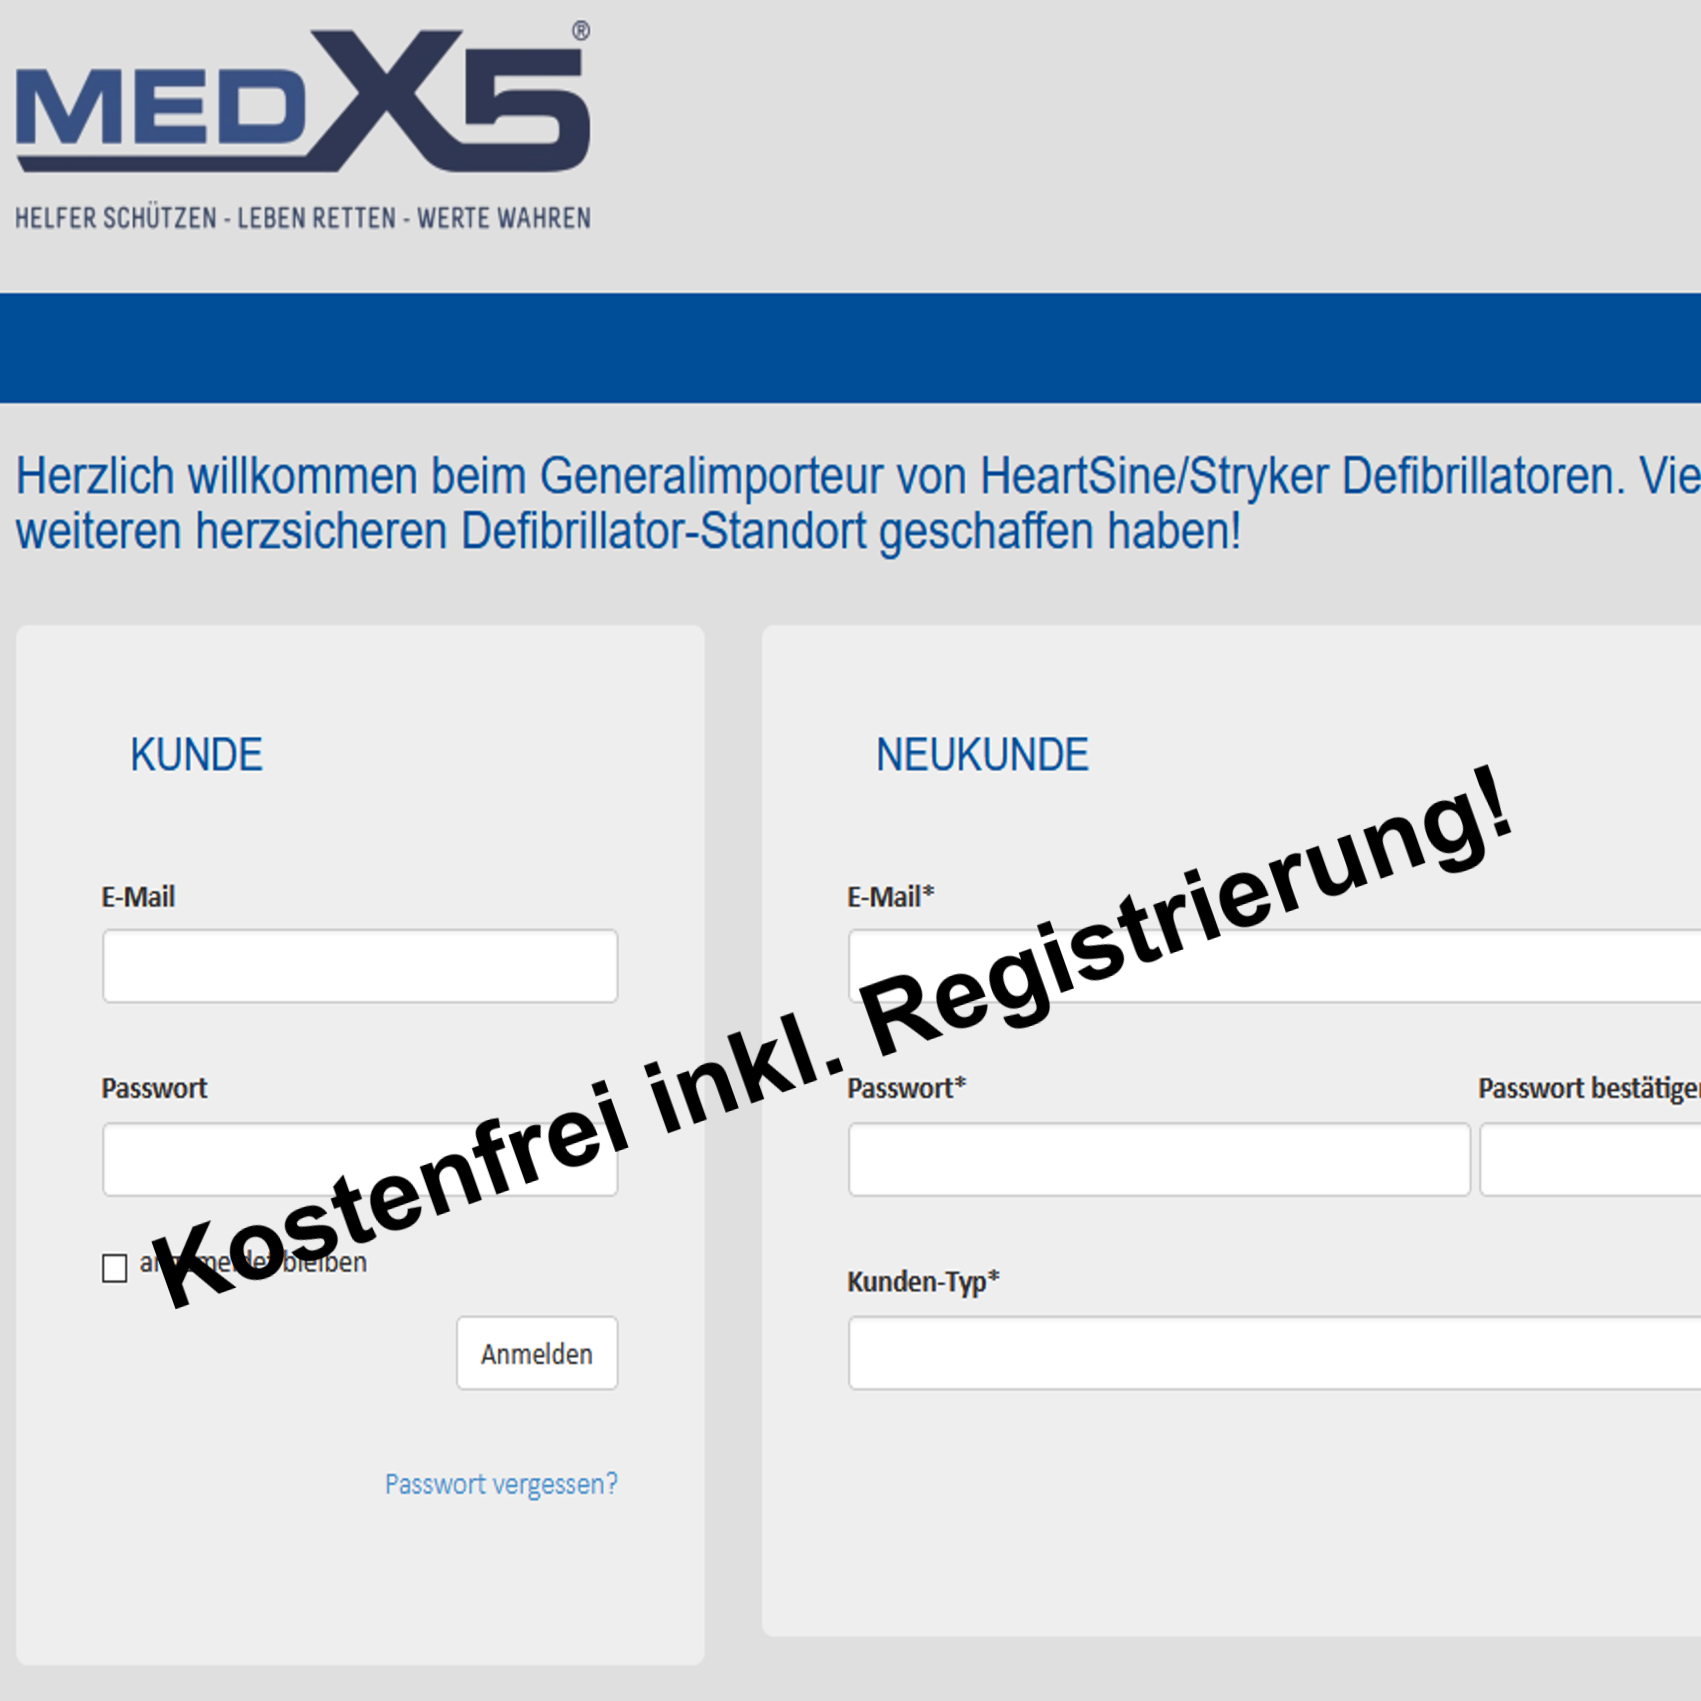 Defibrillator Online-Schulung  MPBetreibV/MDR Registrierung, Nachweis & Zertifikat